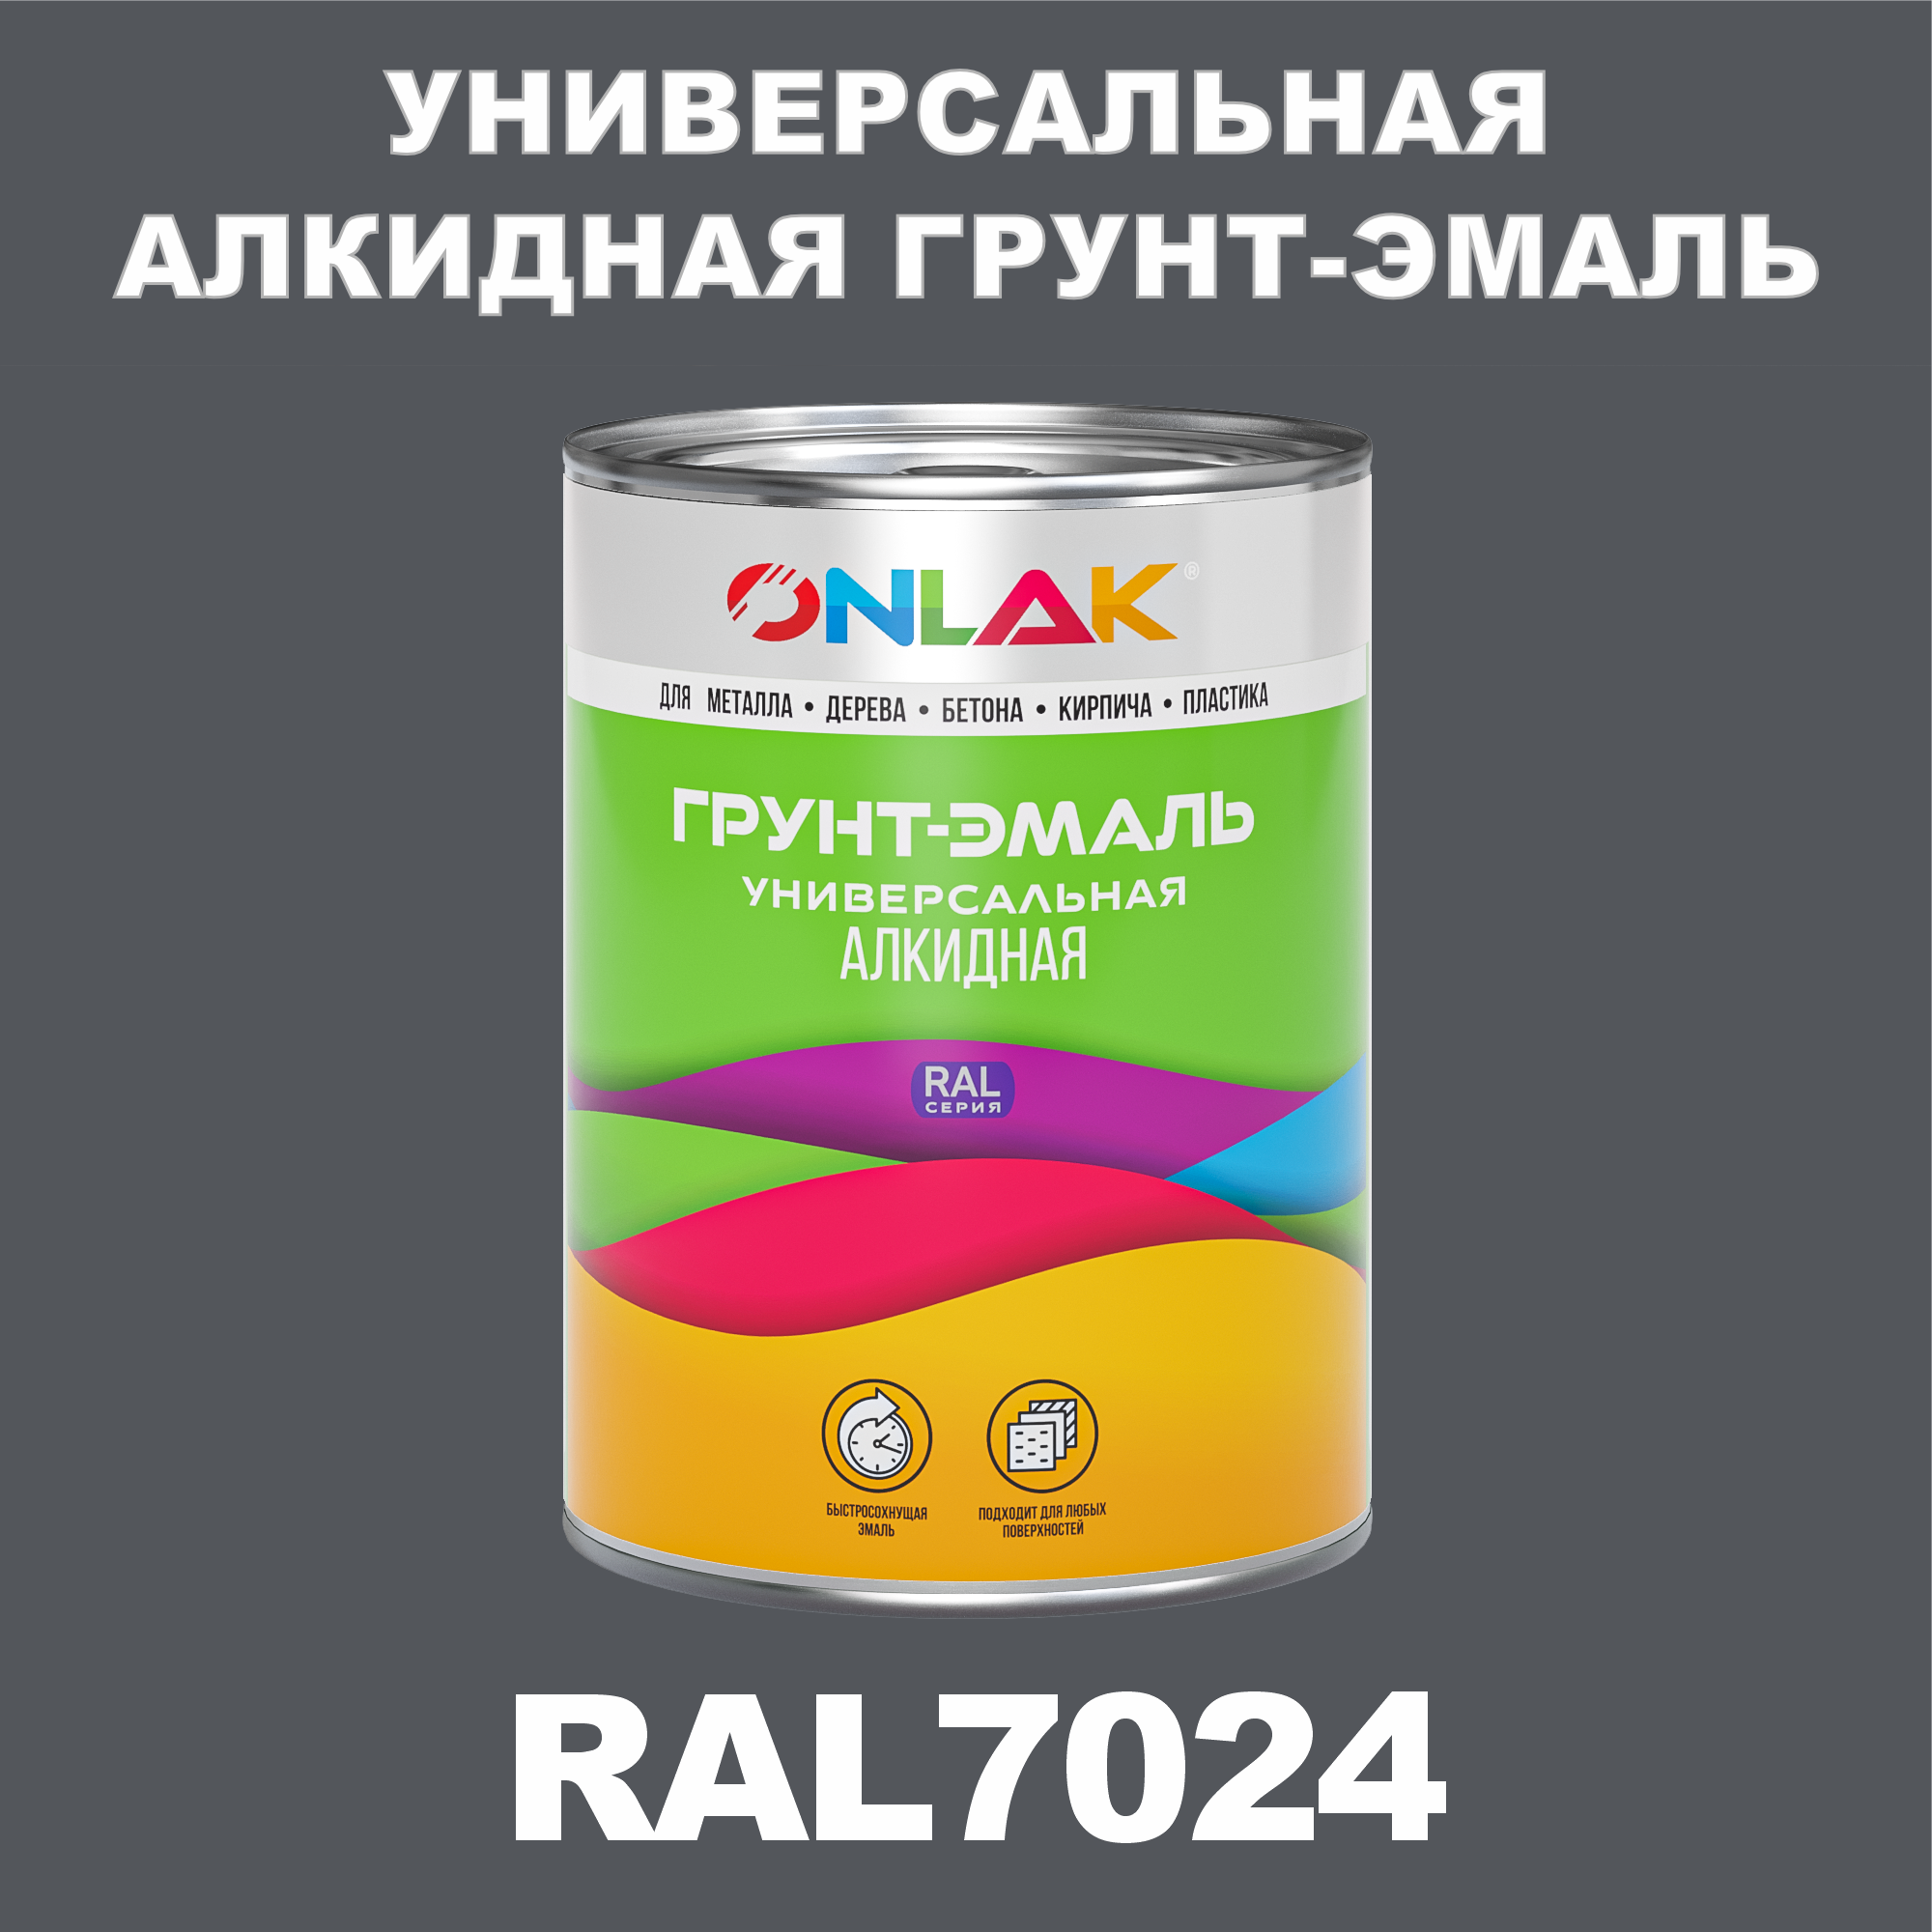 Грунт-эмаль ONLAK 1К RAL7024 антикоррозионная алкидная по металлу по ржавчине 1 кг грунт эмаль skladno по ржавчине алкидная желтая 1 8 кг